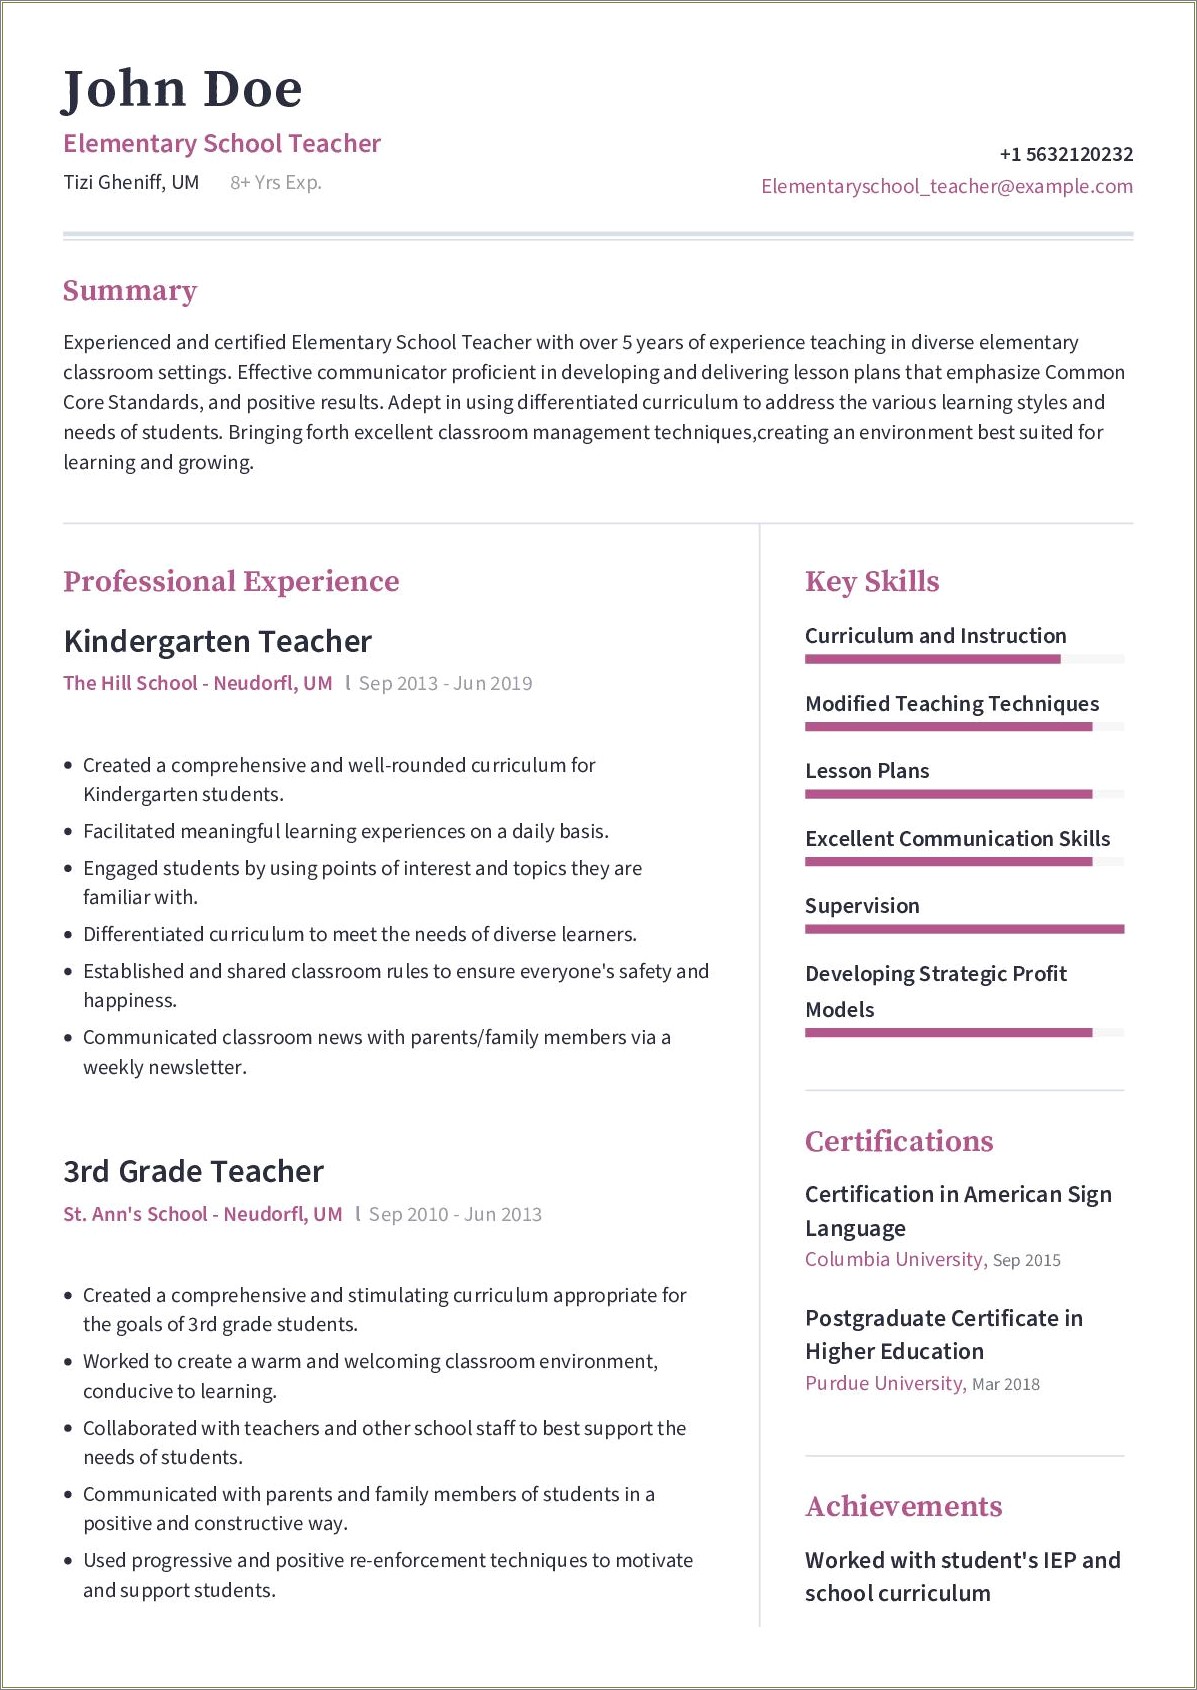 Resume Skills Section For Teachers